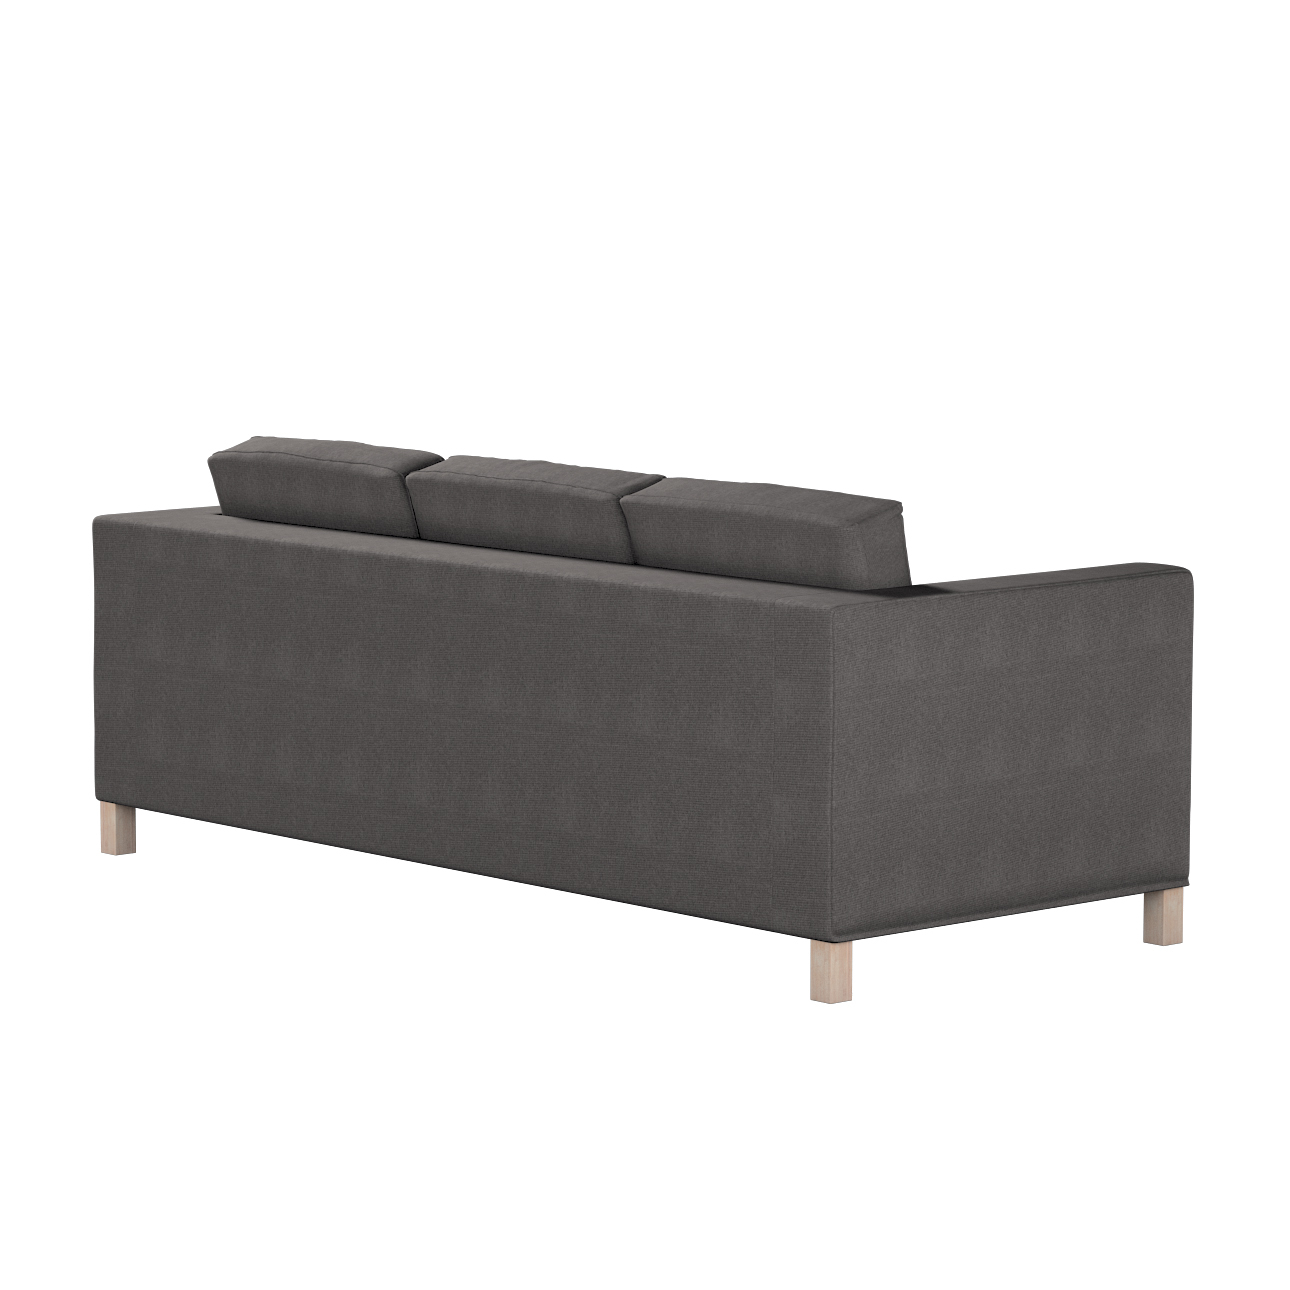 Bezug für Karlanda 3-Sitzer Sofa nicht ausklappbar, kurz, dunkelgrau, Bezug günstig online kaufen